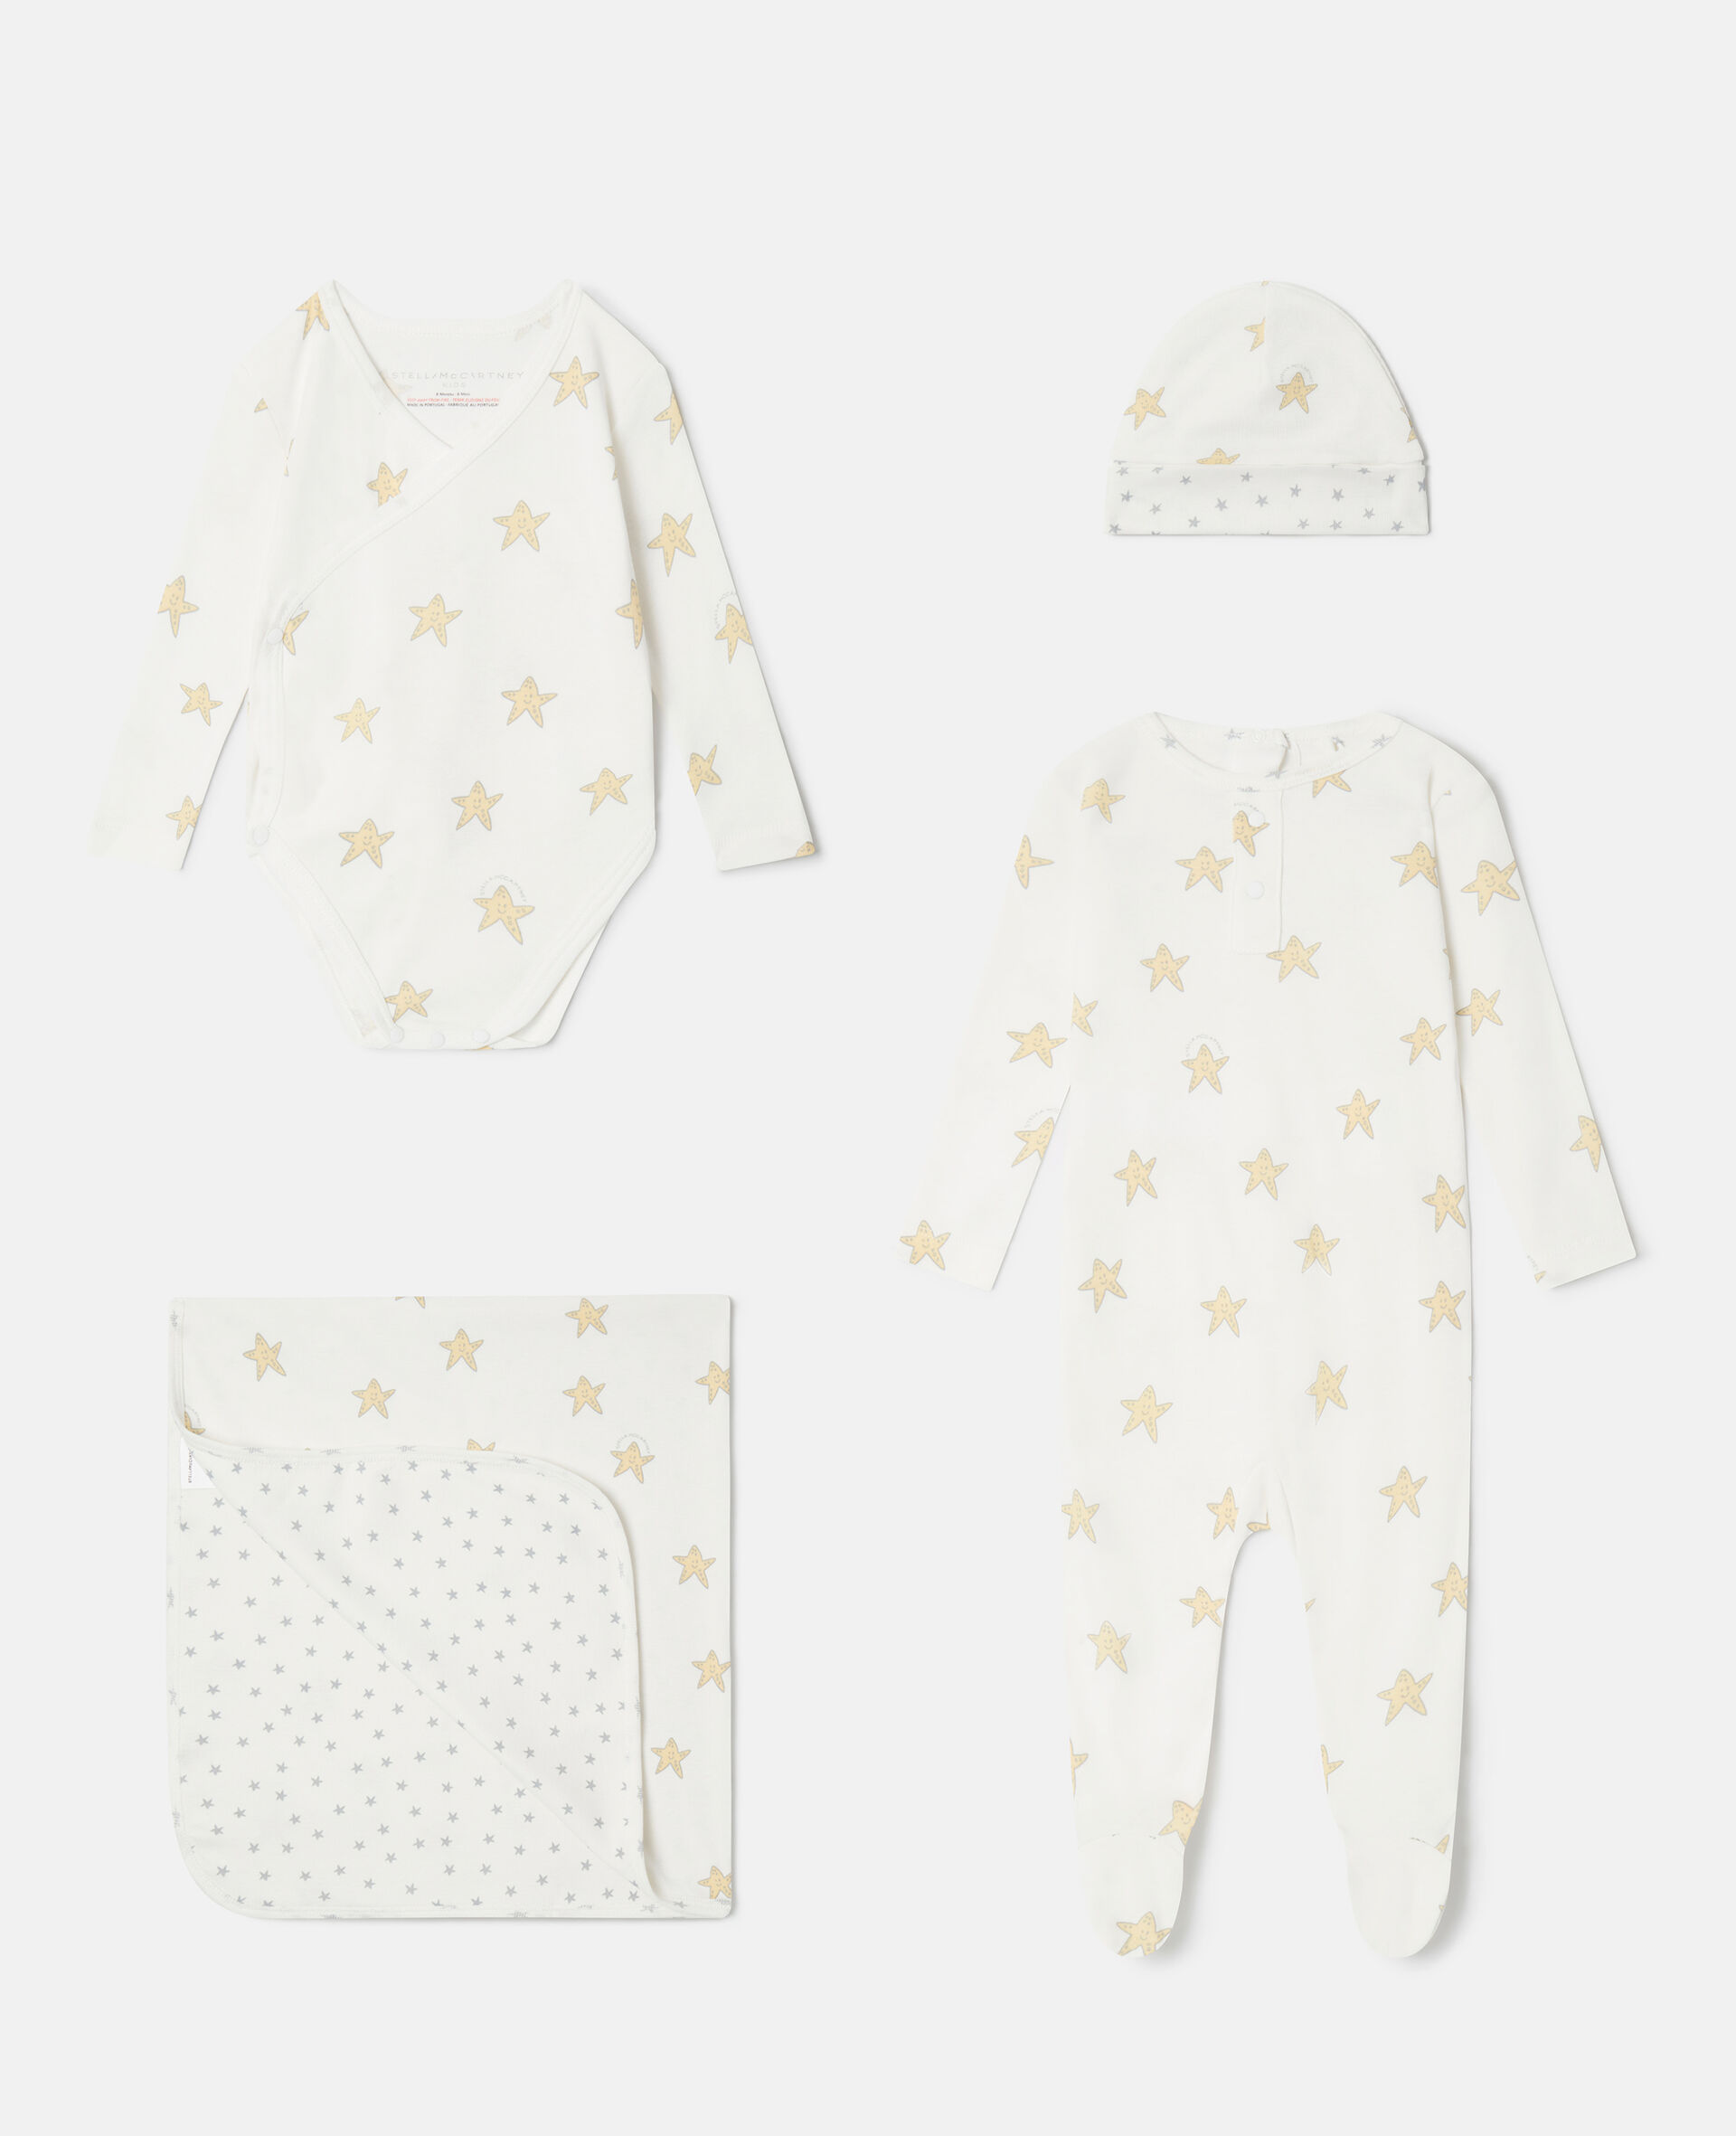 Smiling Stella Star Print Baby Gift Set-Fantasia-large image number 0